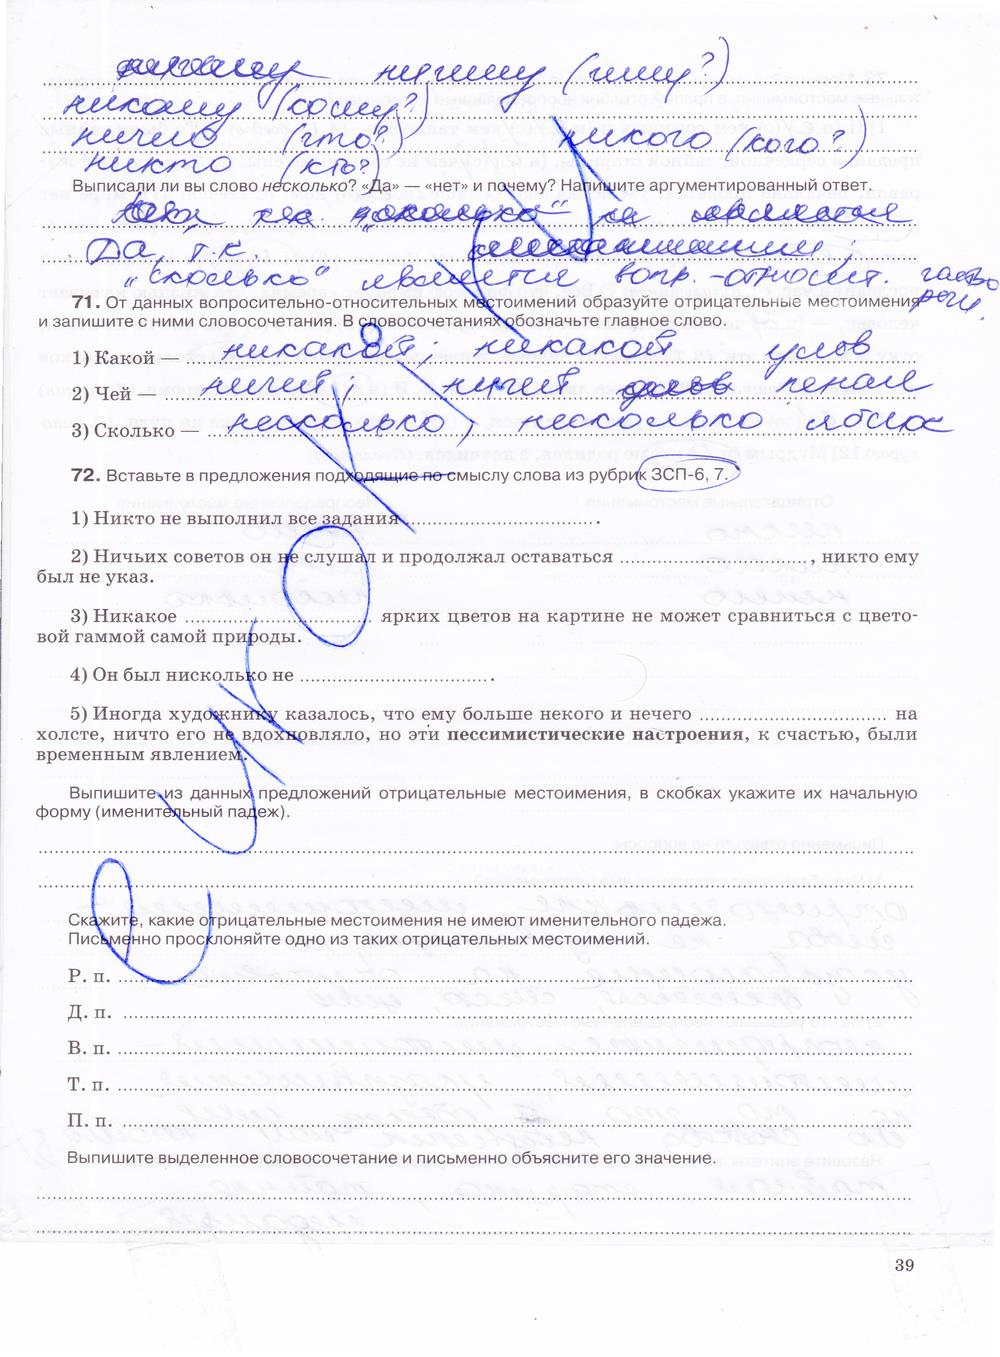 гдз 7 класс рабочая тетрадь страница 39 русский язык Ларионова